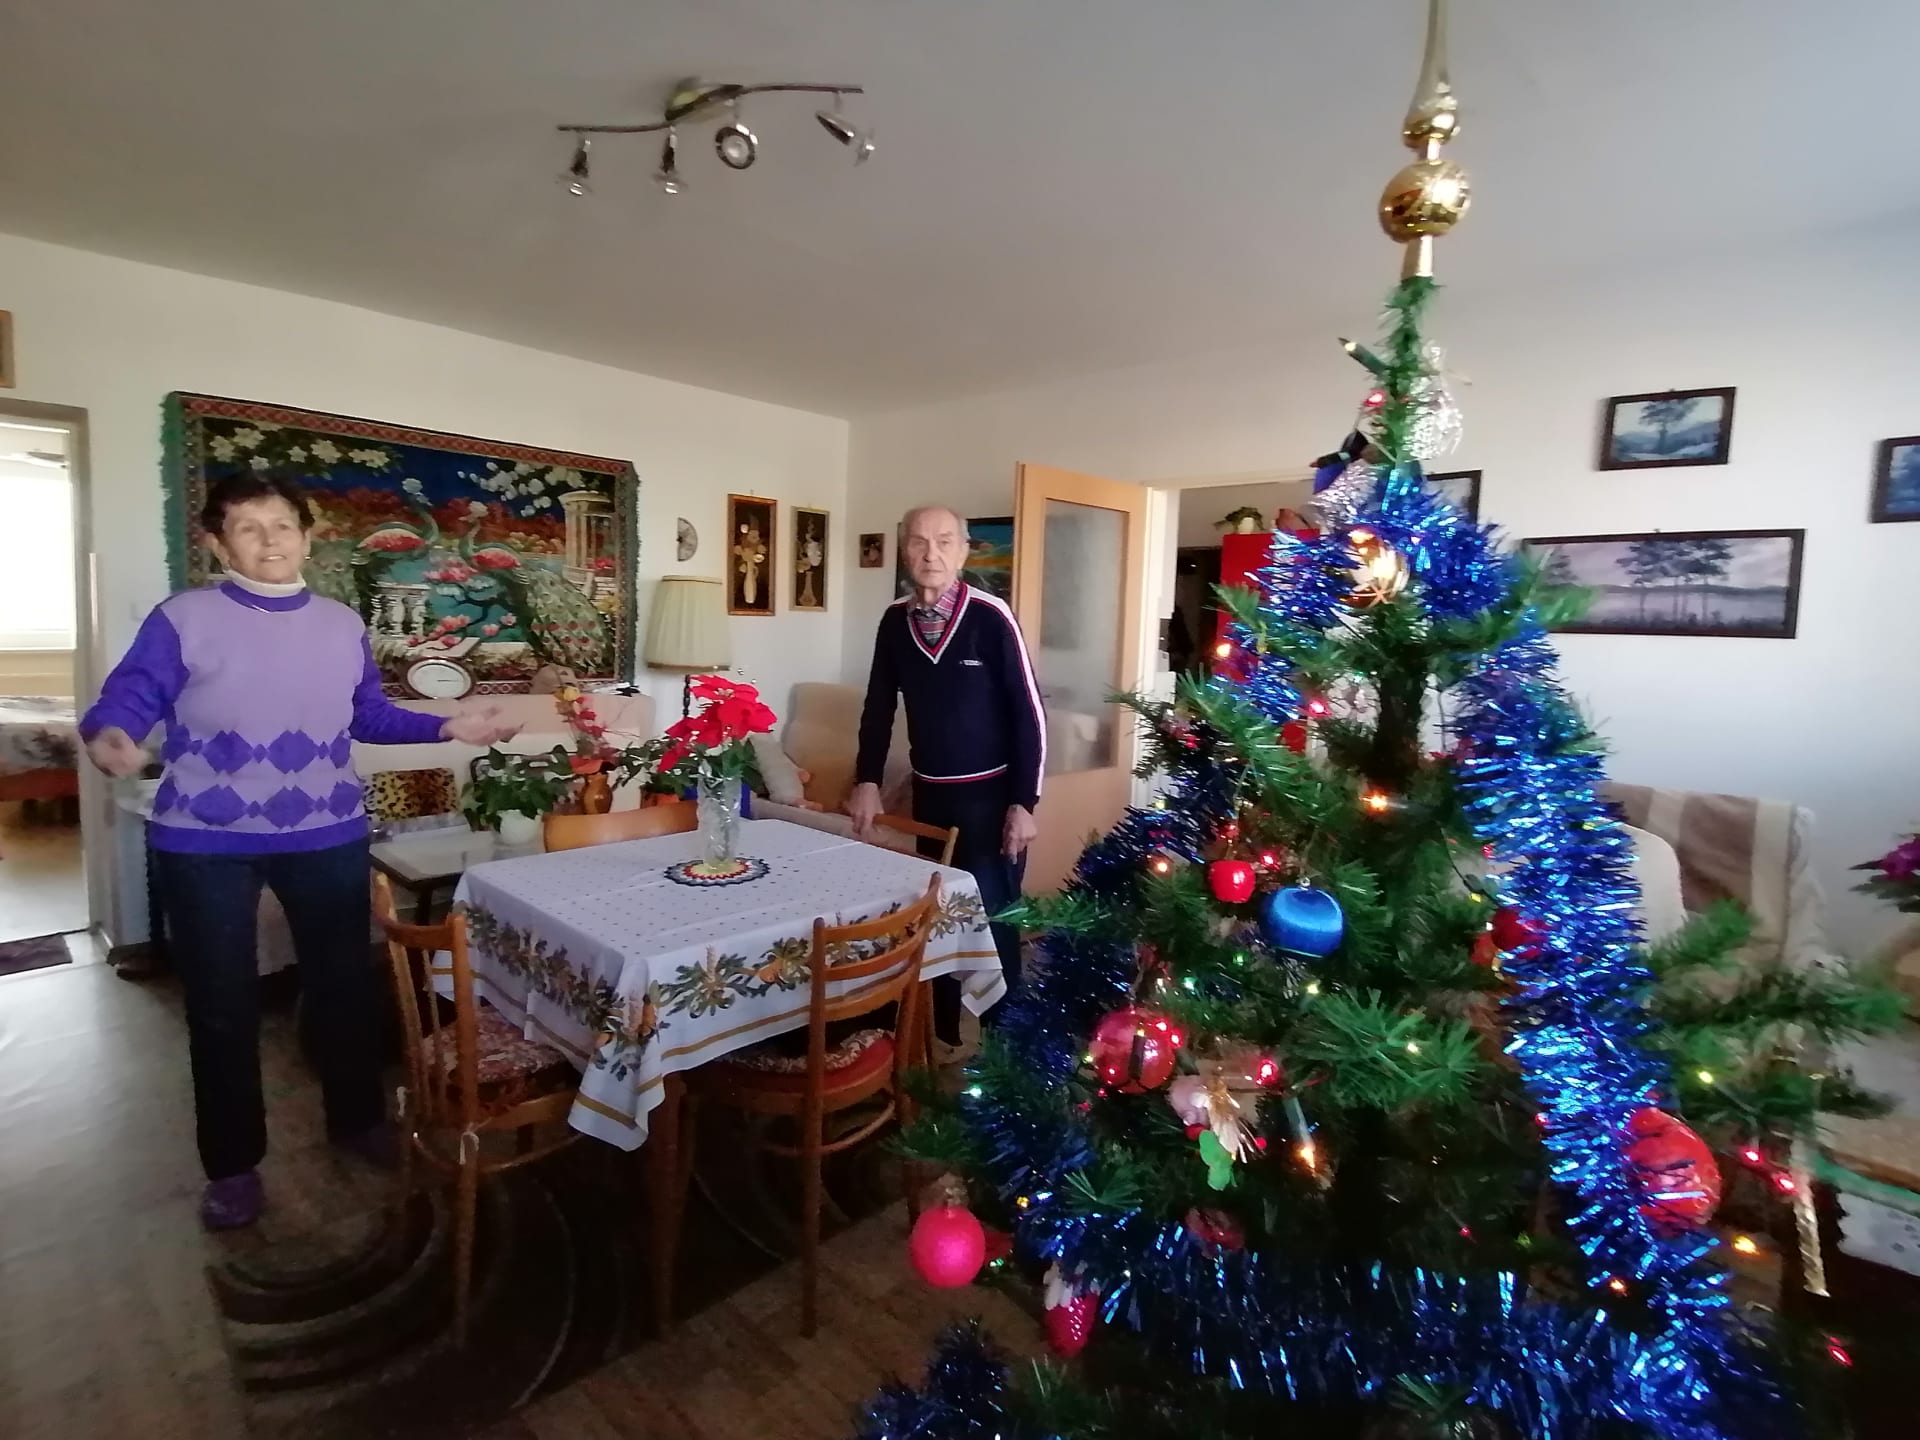 Naďa Herníková s manželem Jiřím, Vánoce 2021 v Lužicích